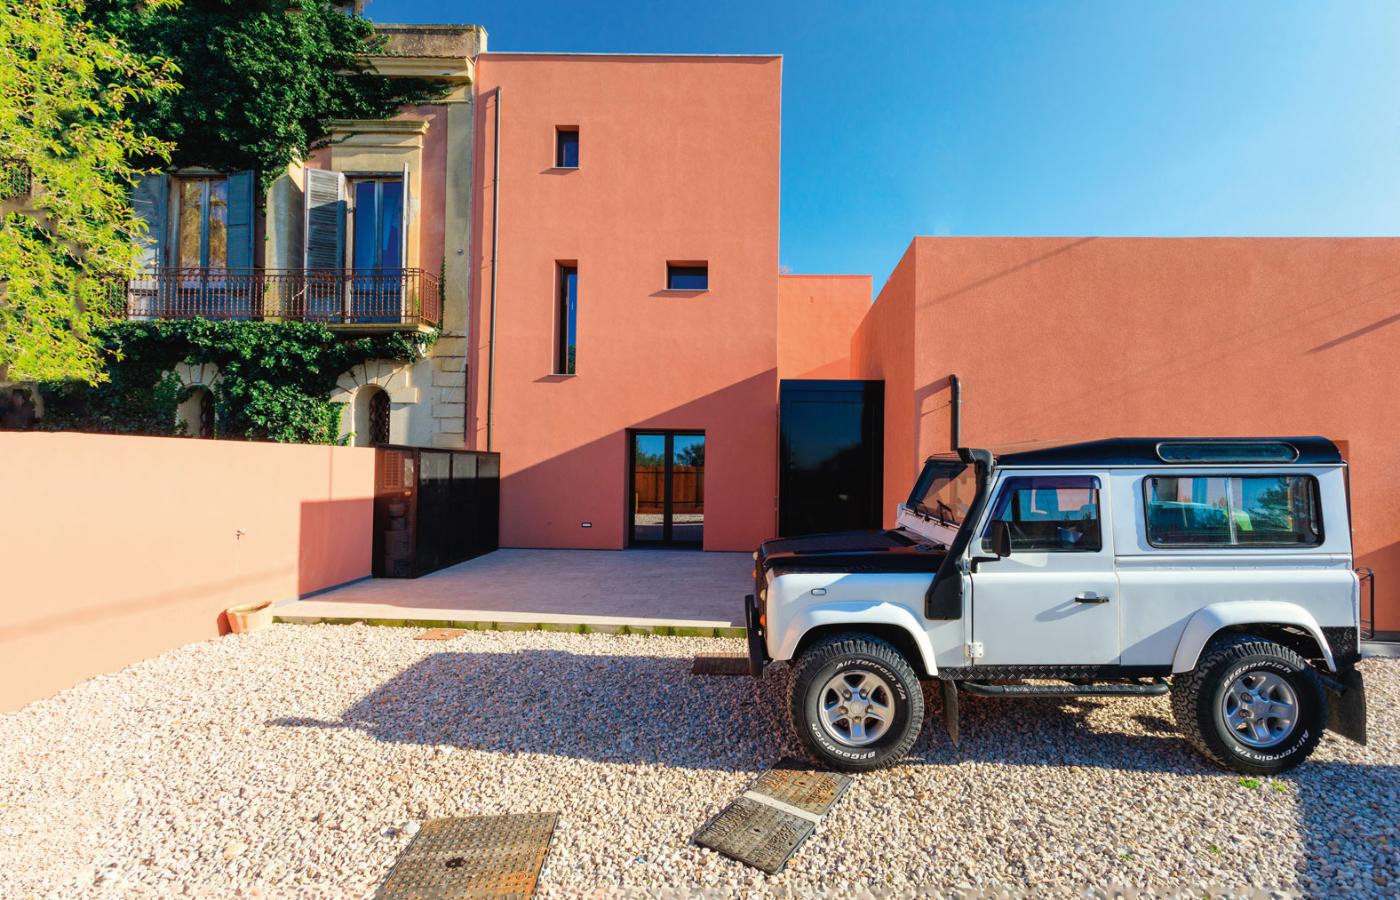 Różowy kolor nie jest kojarzony z nowoczesnymi willami. Jednak Salvatore Oddo, autor przebudowy, postawił na tę barwę, bo występuje w tradycyjnych zabudowaniach na Sycylii. Dzięki temu dom lepiej wpisał się w otoczenie.